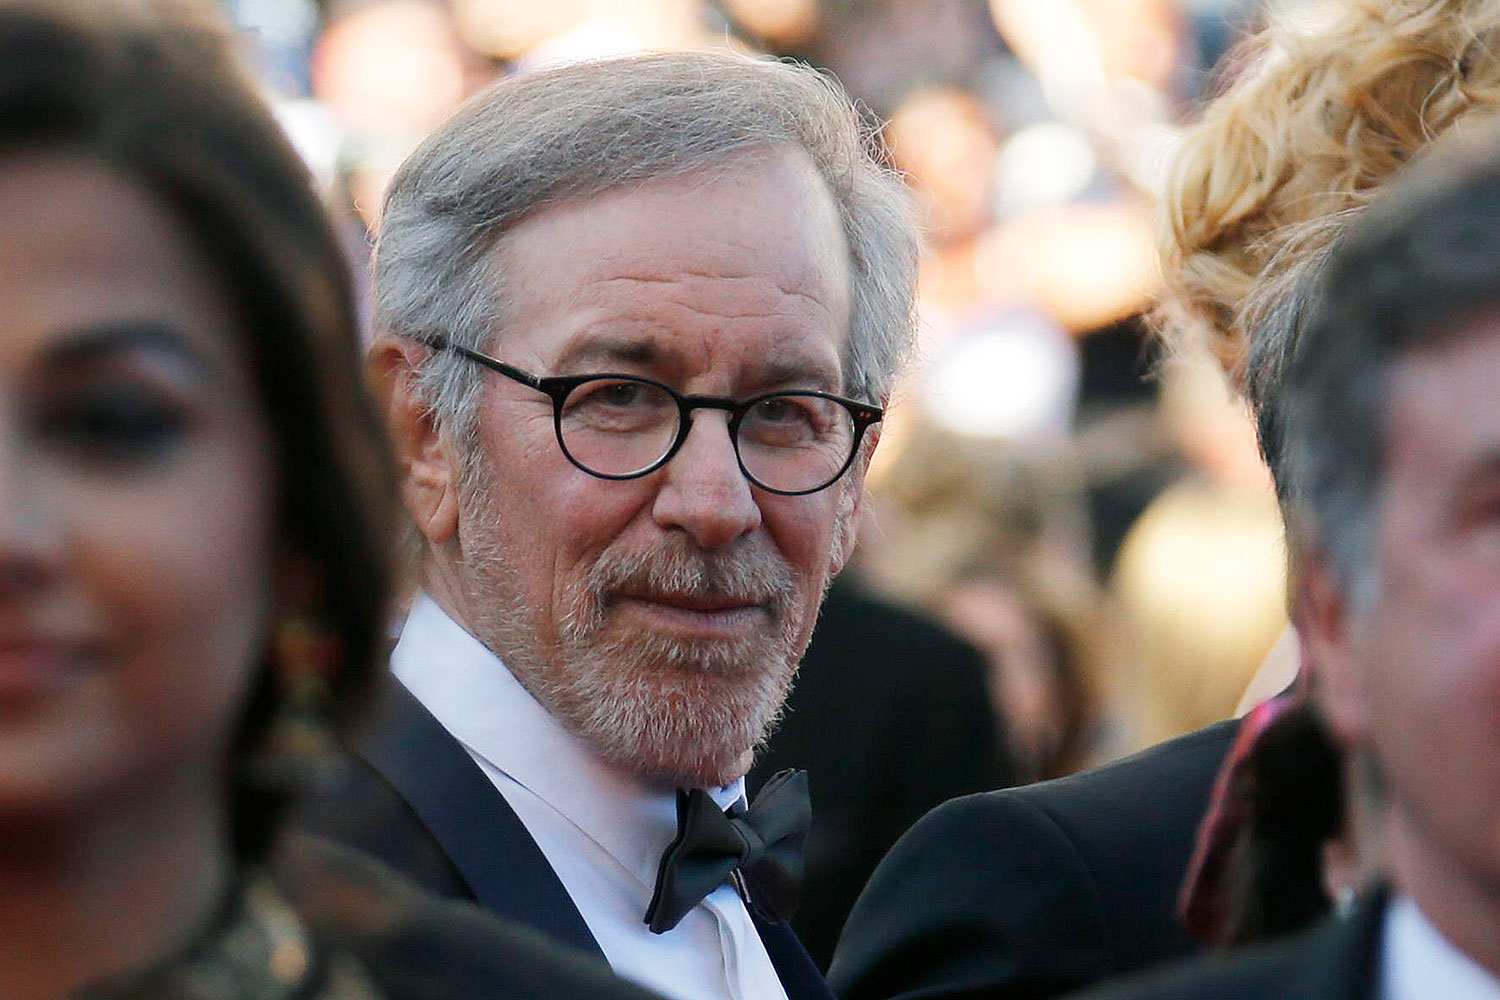 Steven Spielberg destrona a Oprah Winfrey como la persona más influyente de Estados Unidos